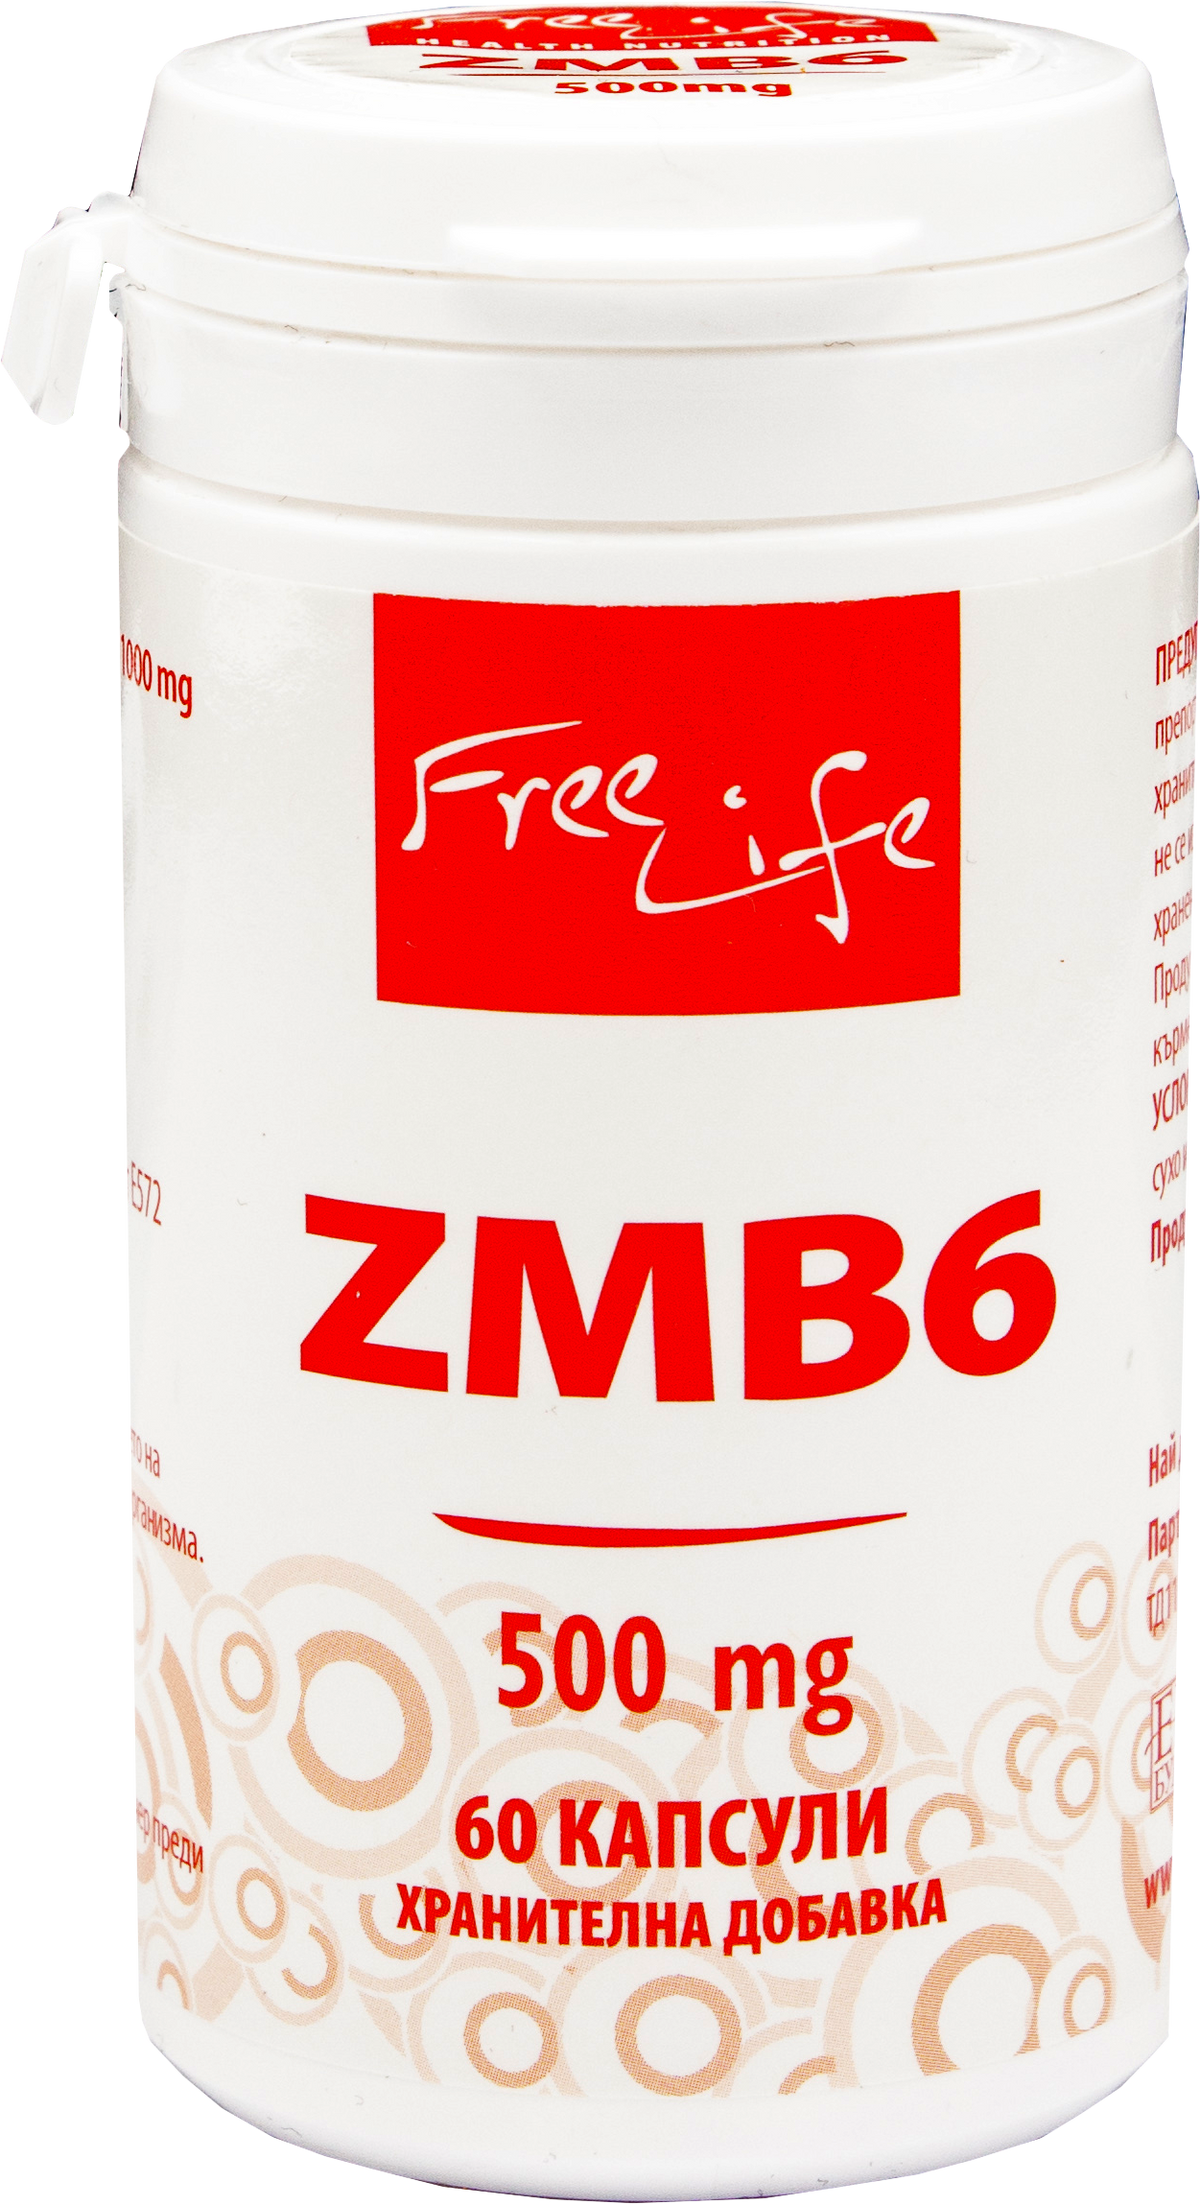 ZMB6 500 mg - BadiZdrav.BG